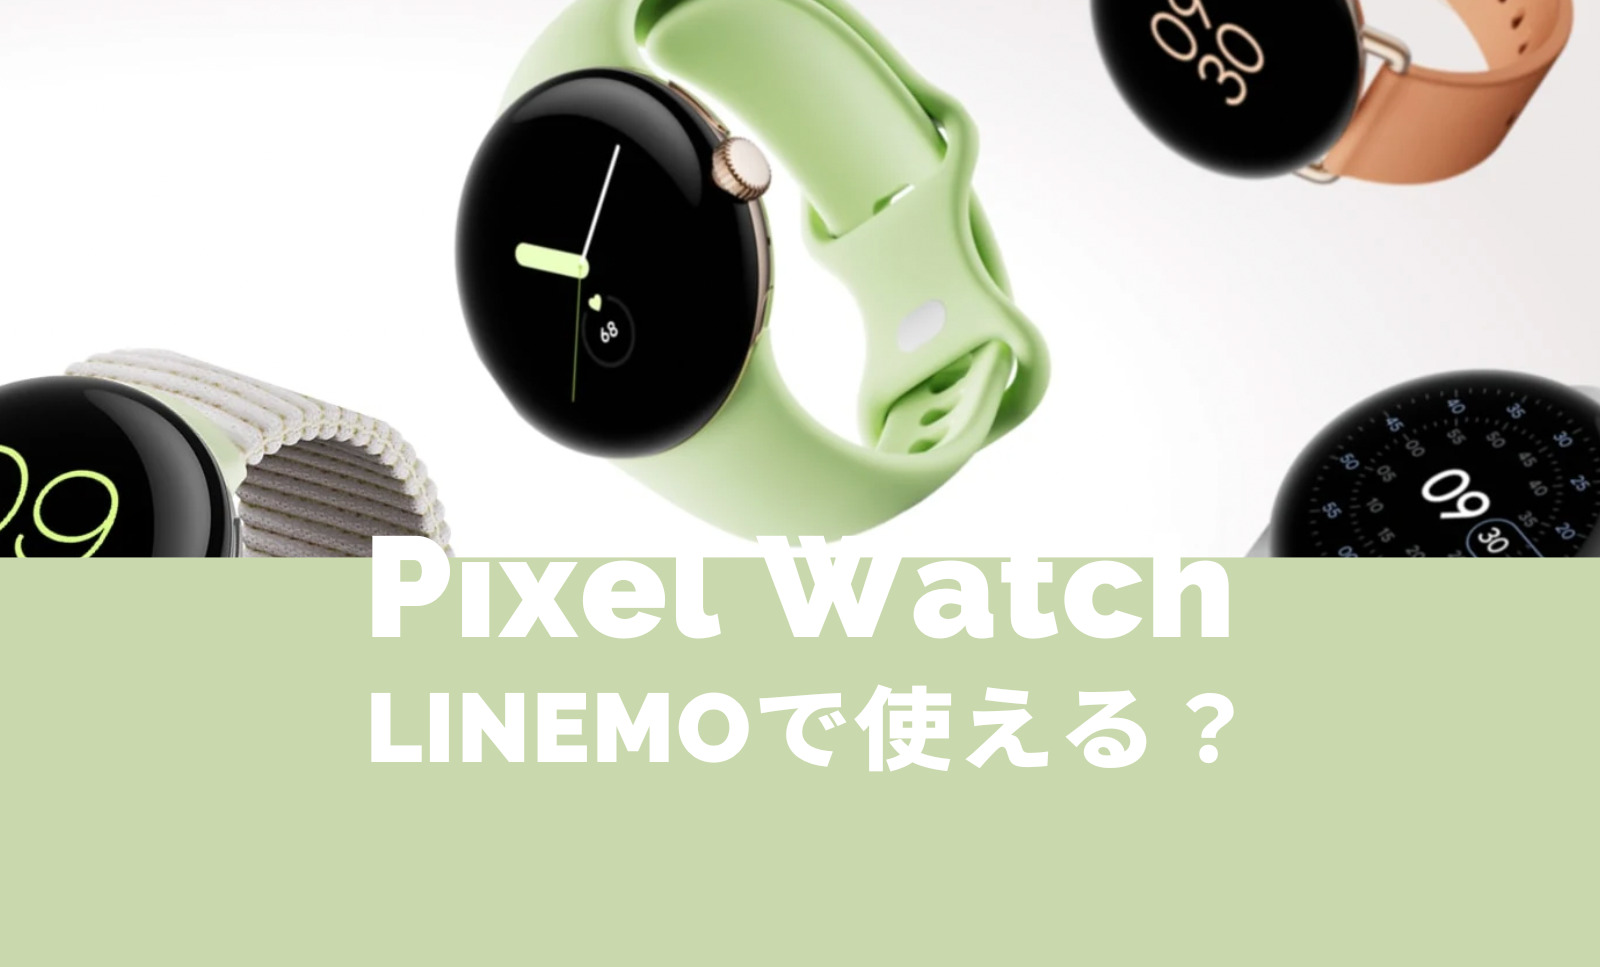 Pixel Watch(ピクセルウォッチ)はLINEMO(ラインモ)で使える？LTEモデルは？【Google】のサムネイル画像